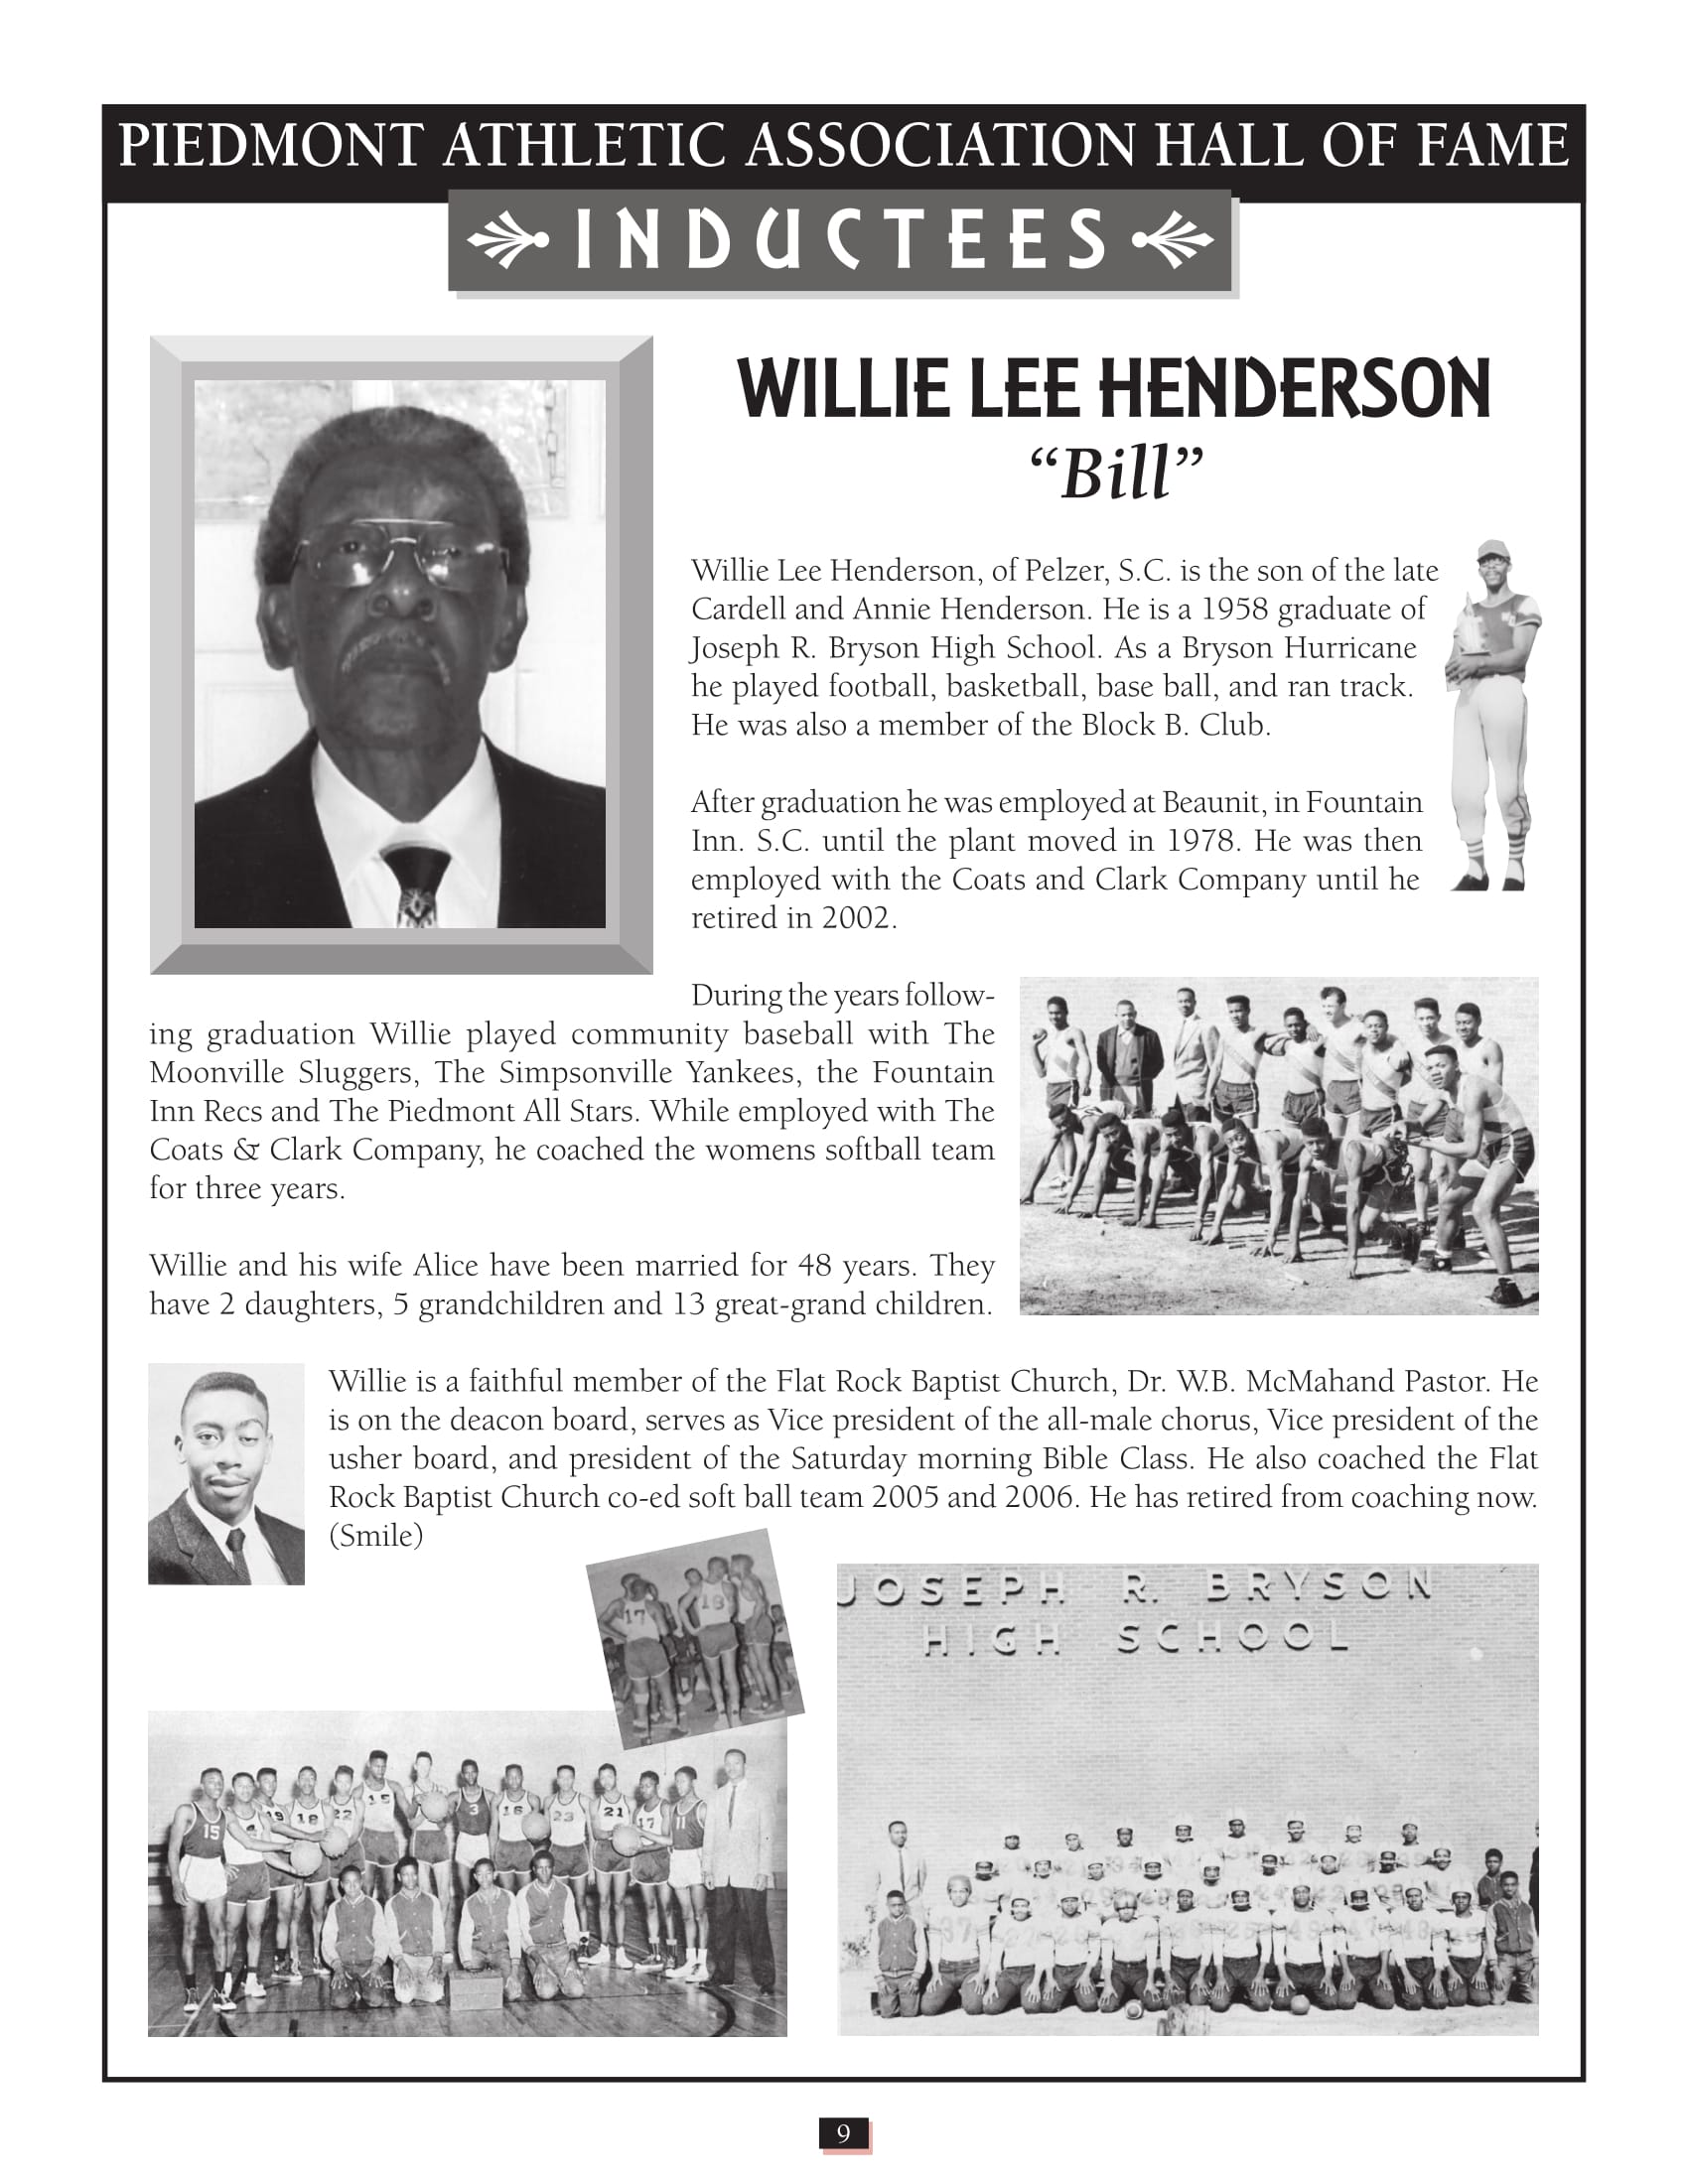 Willie Henderson